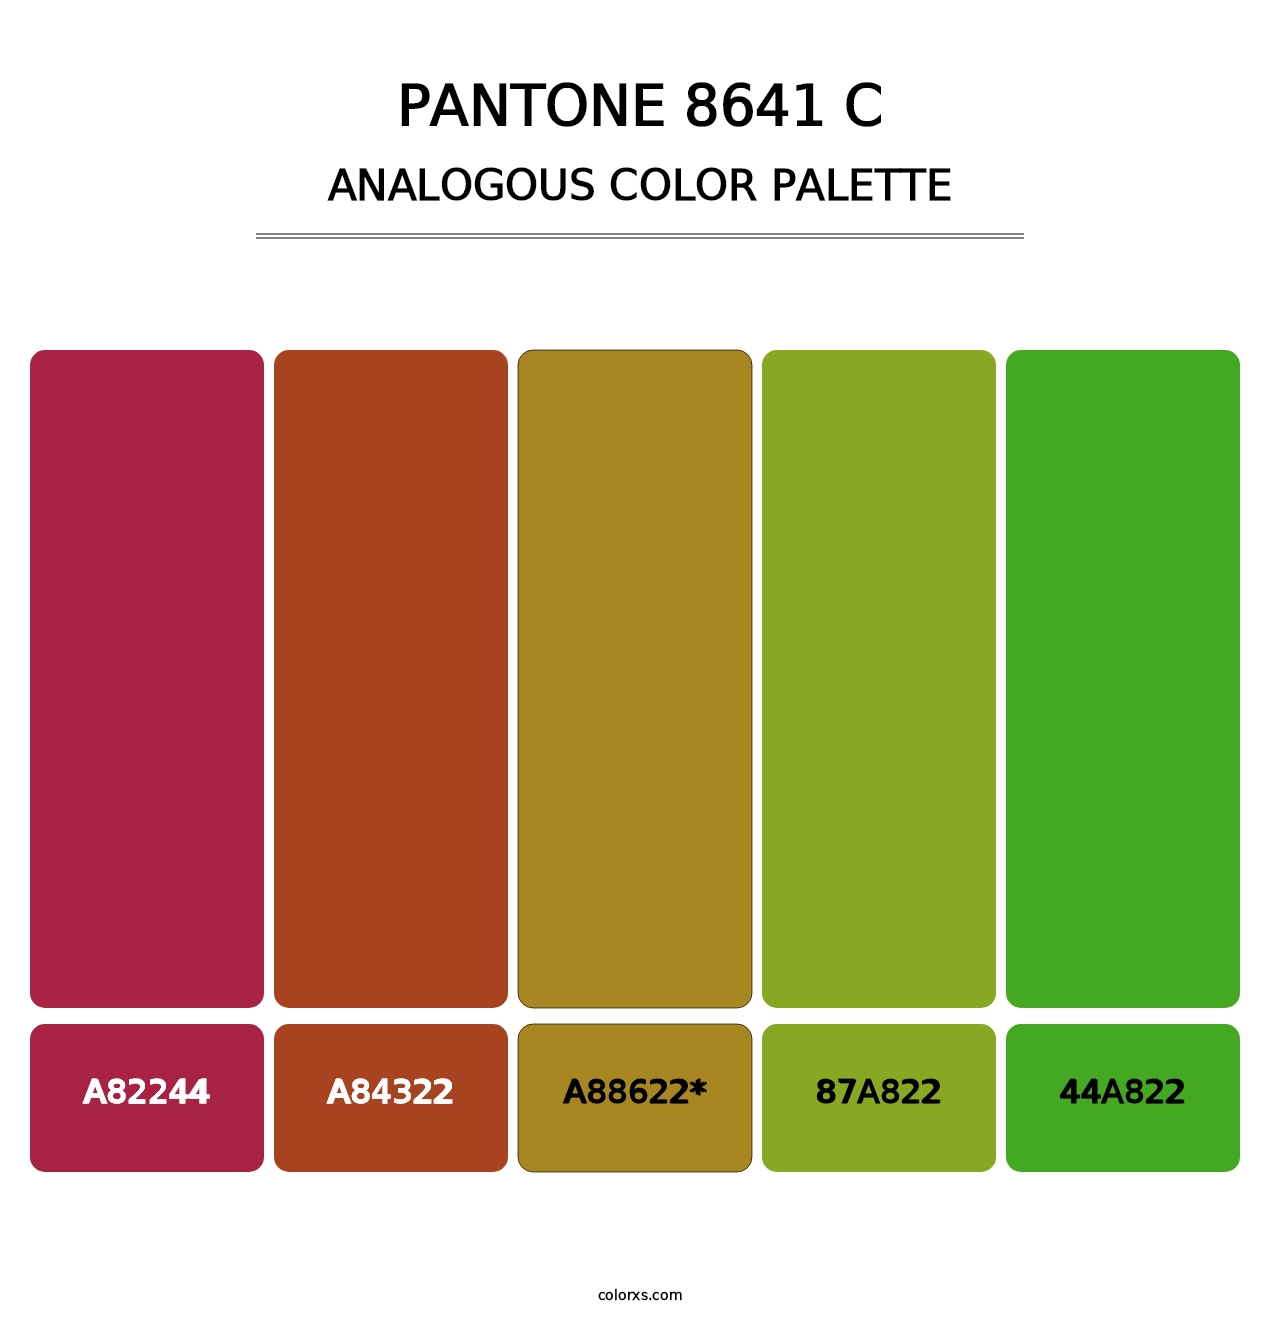 PANTONE 8641 C - Analogous Color Palette